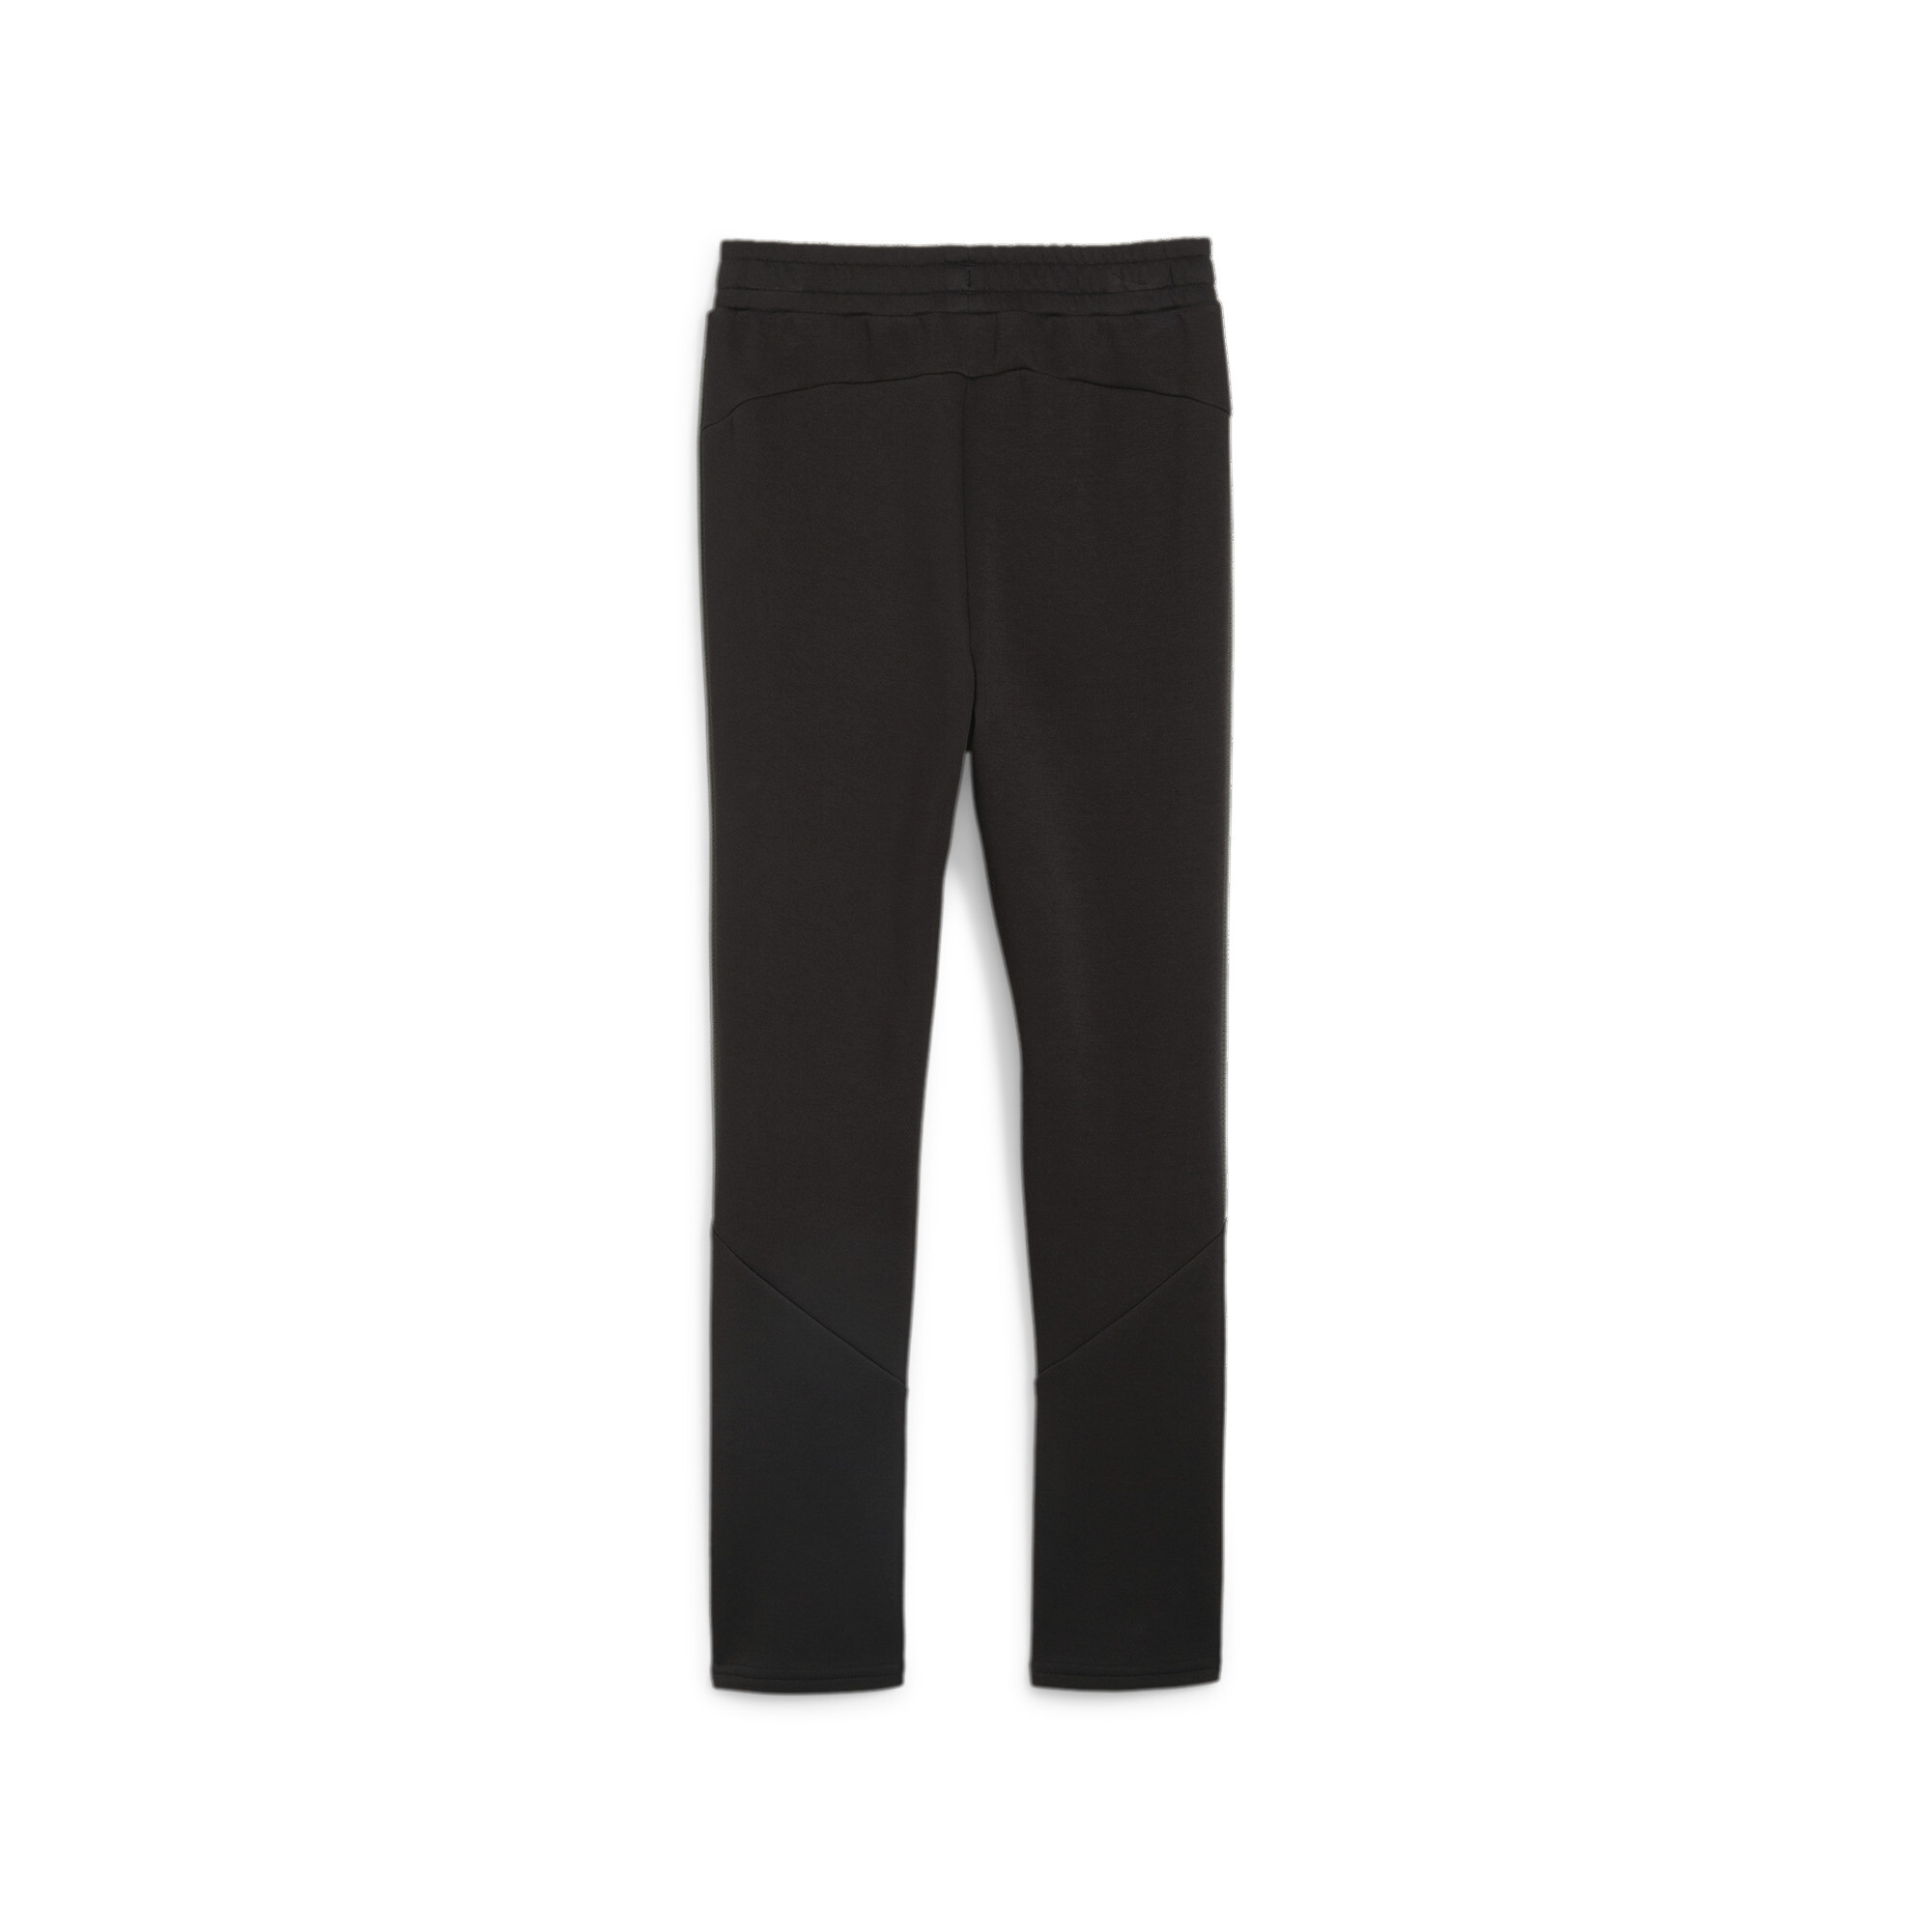 PUMA EVOSTRIPE Sweatpants In Black, Size 11-12 Youth